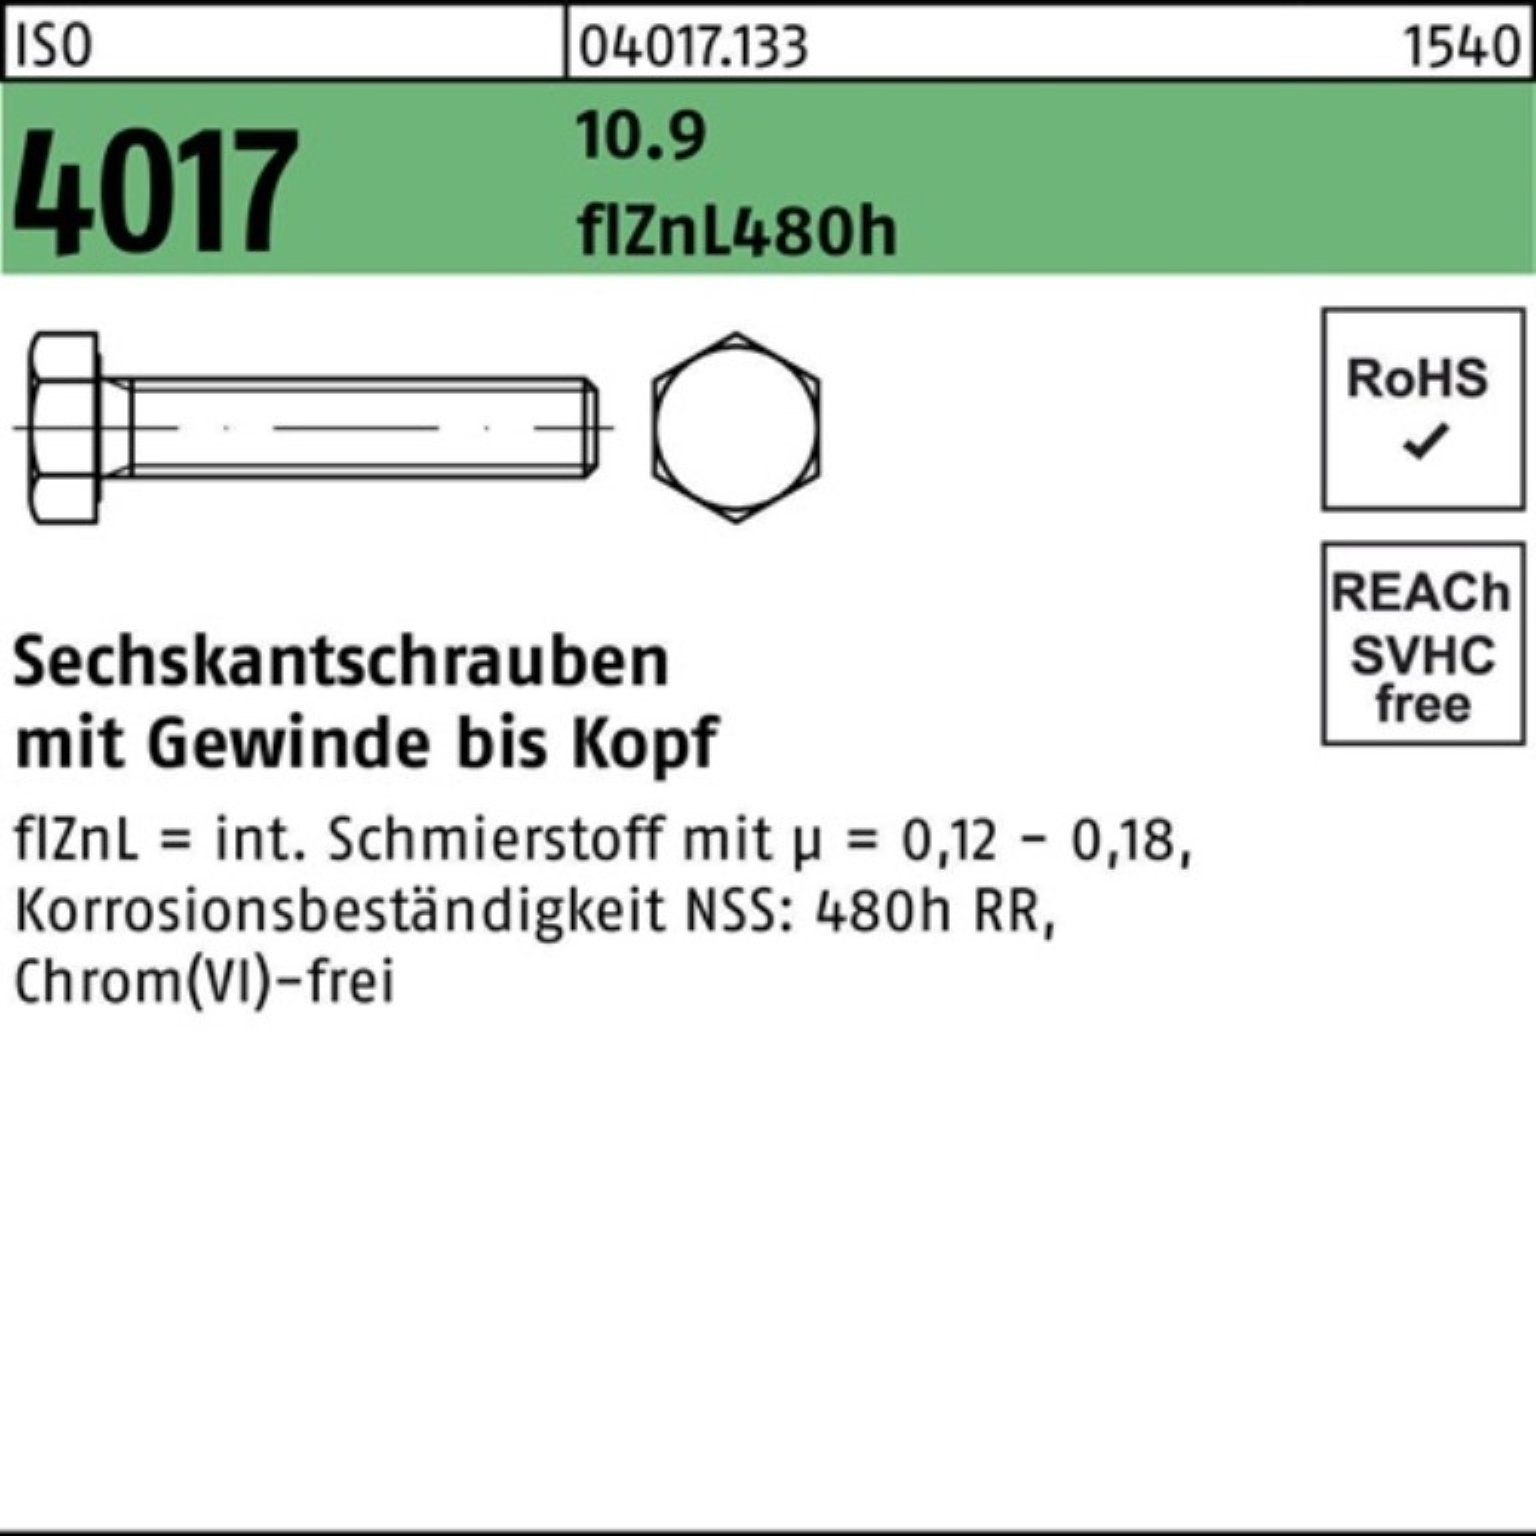 Bufab Sechskantschraube 100er 10.9 Sechskantschraube M24x Pack 4017 VG ISO zinklamellenb. 120